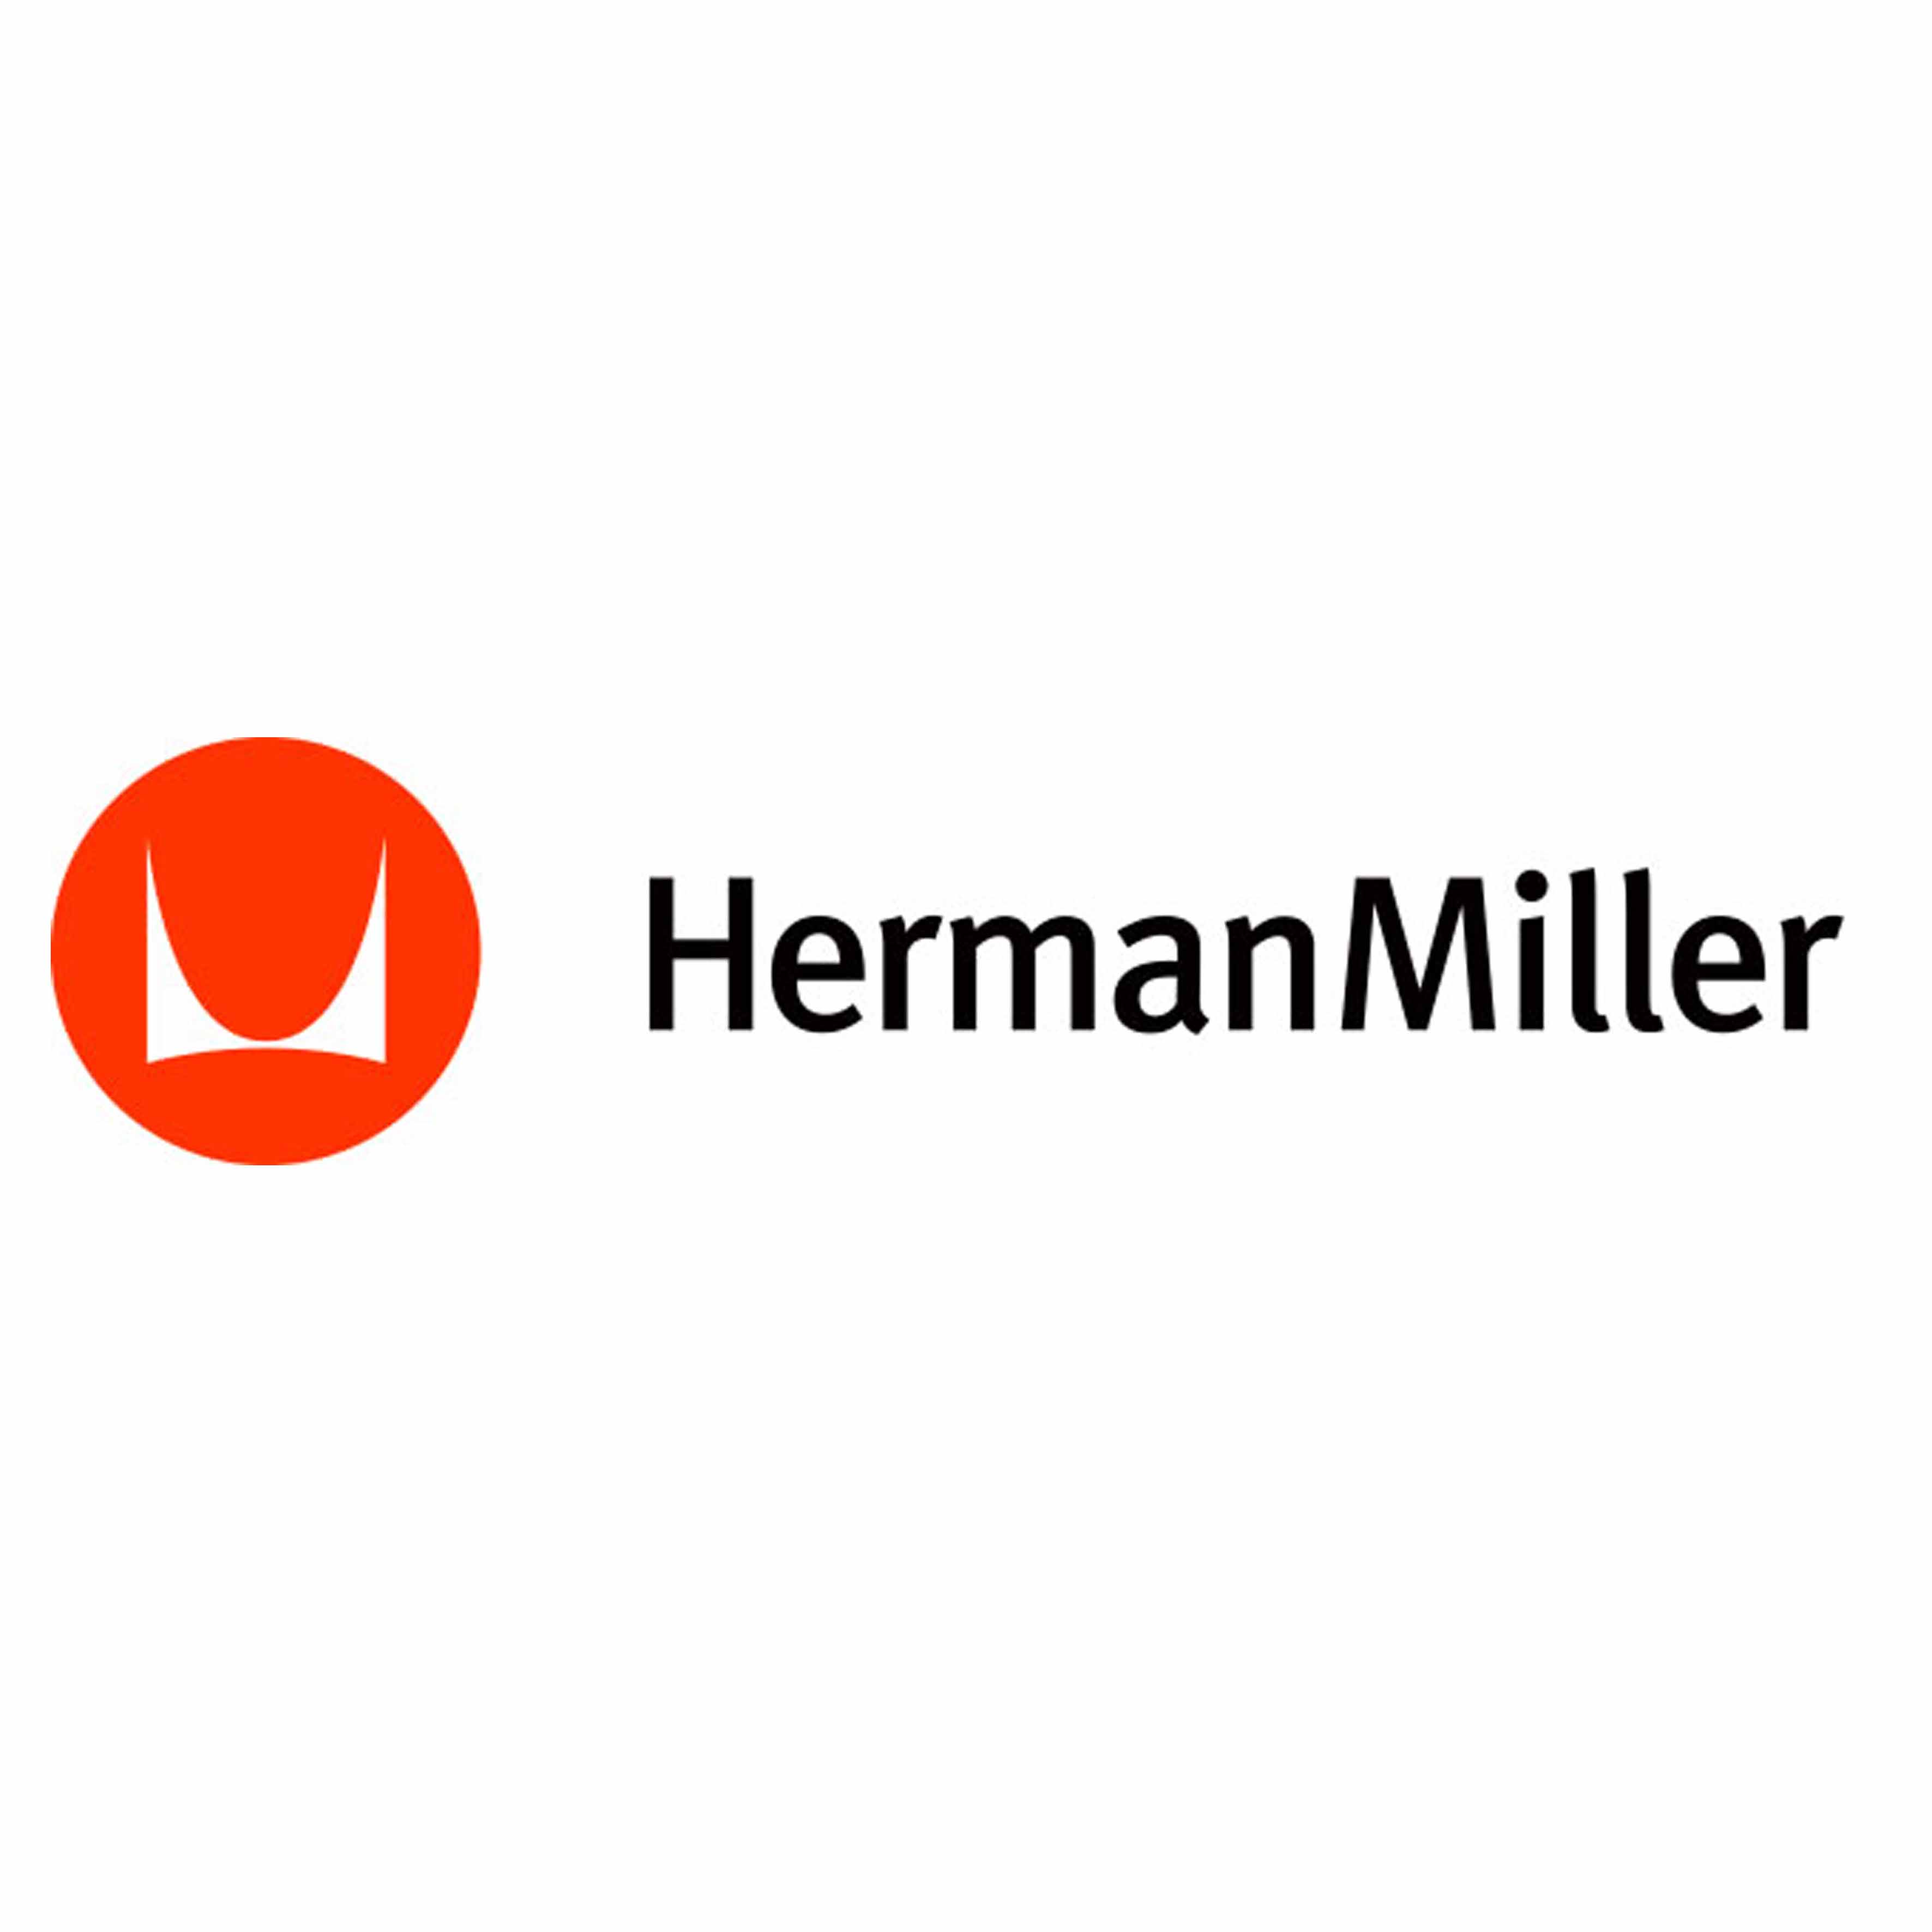 HermanMiller/